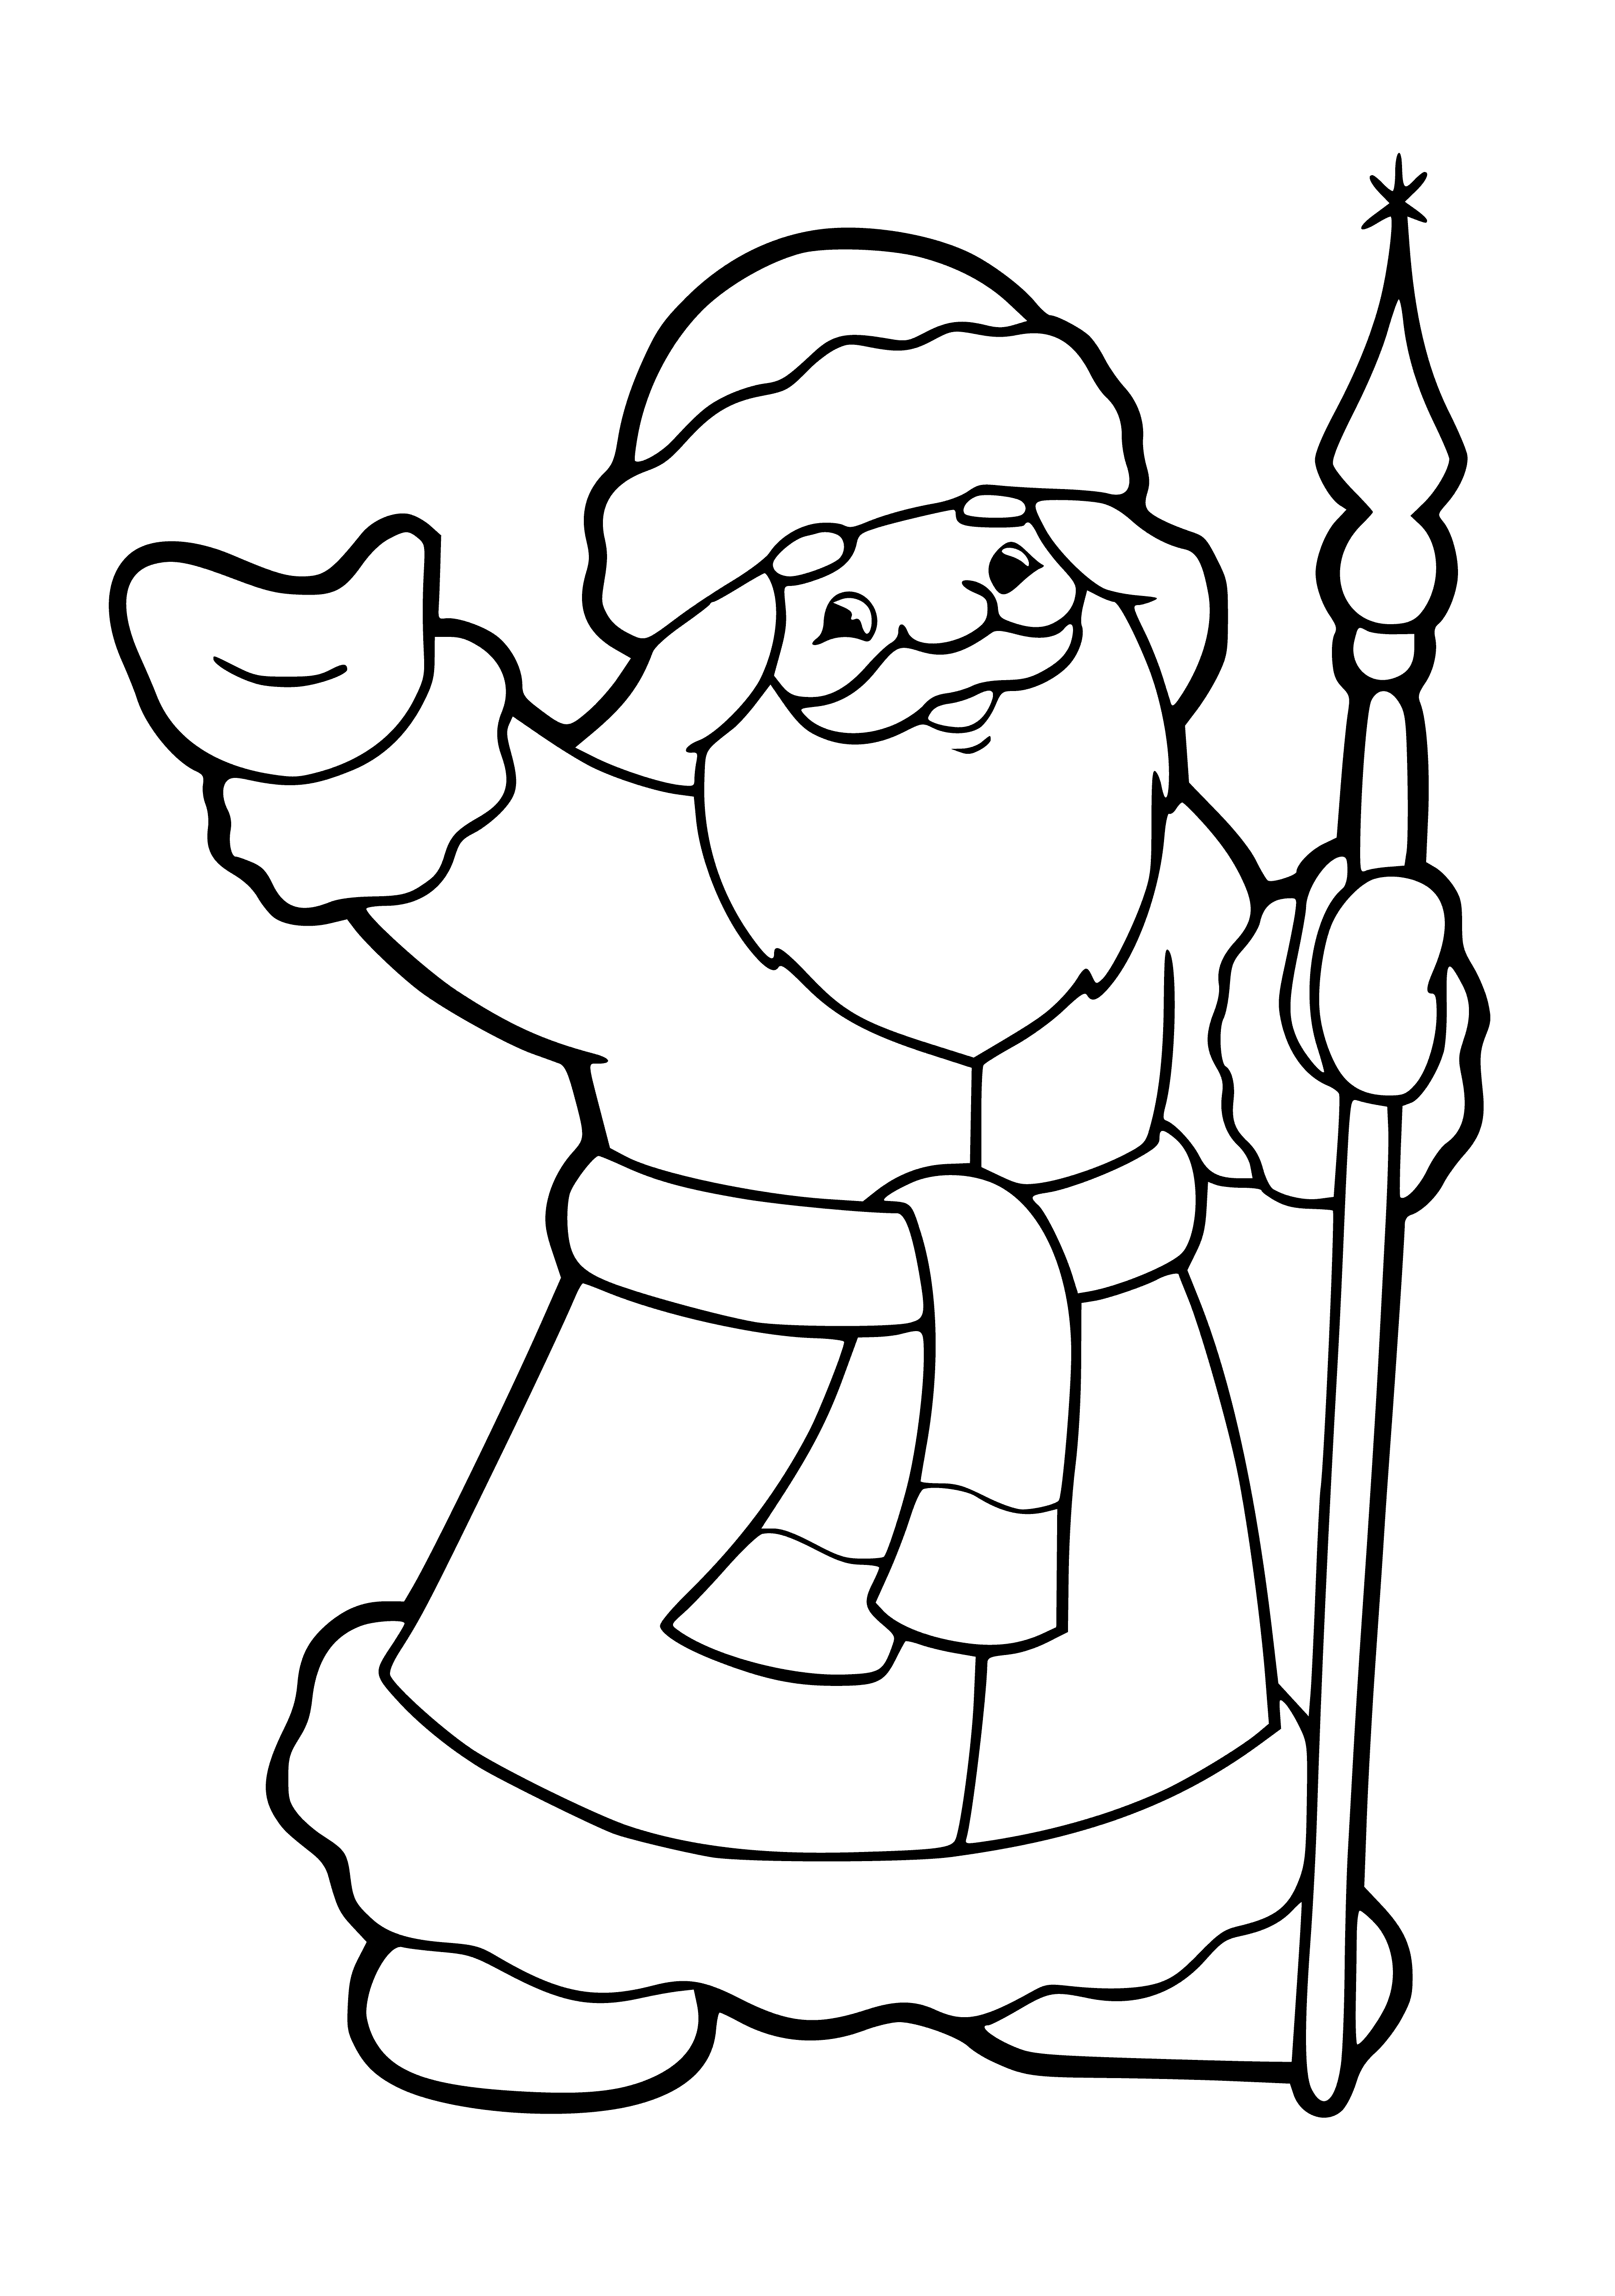 Дед Мороз с посохом раскраска